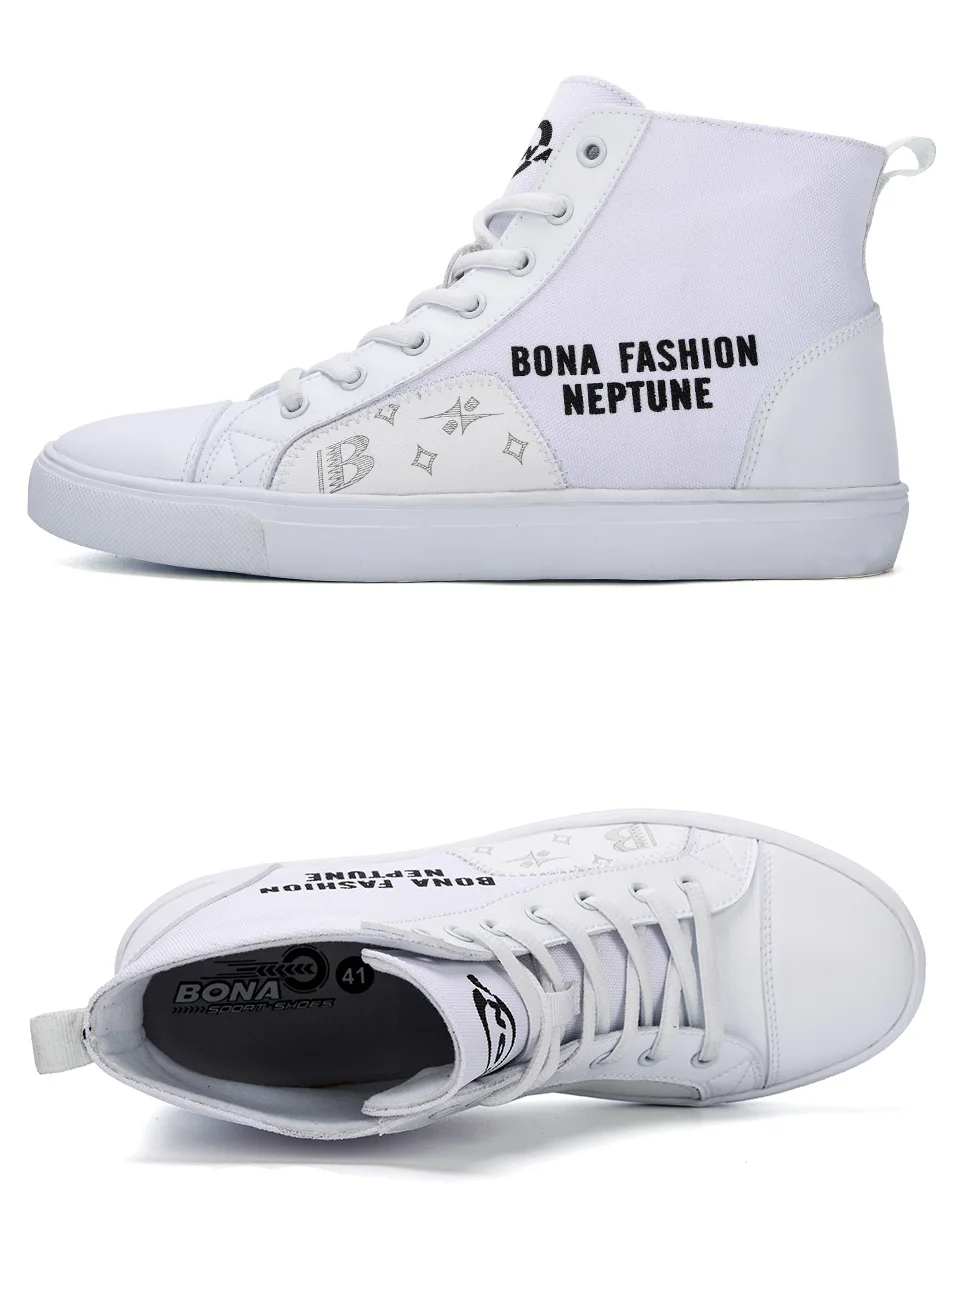 BONA/ г. осенне-Весенняя модная Новая модная парусиновая обувь с высоким верхом, Уличная обувь, мужская обувь для отдыха, модная повседневная обувь для студентов